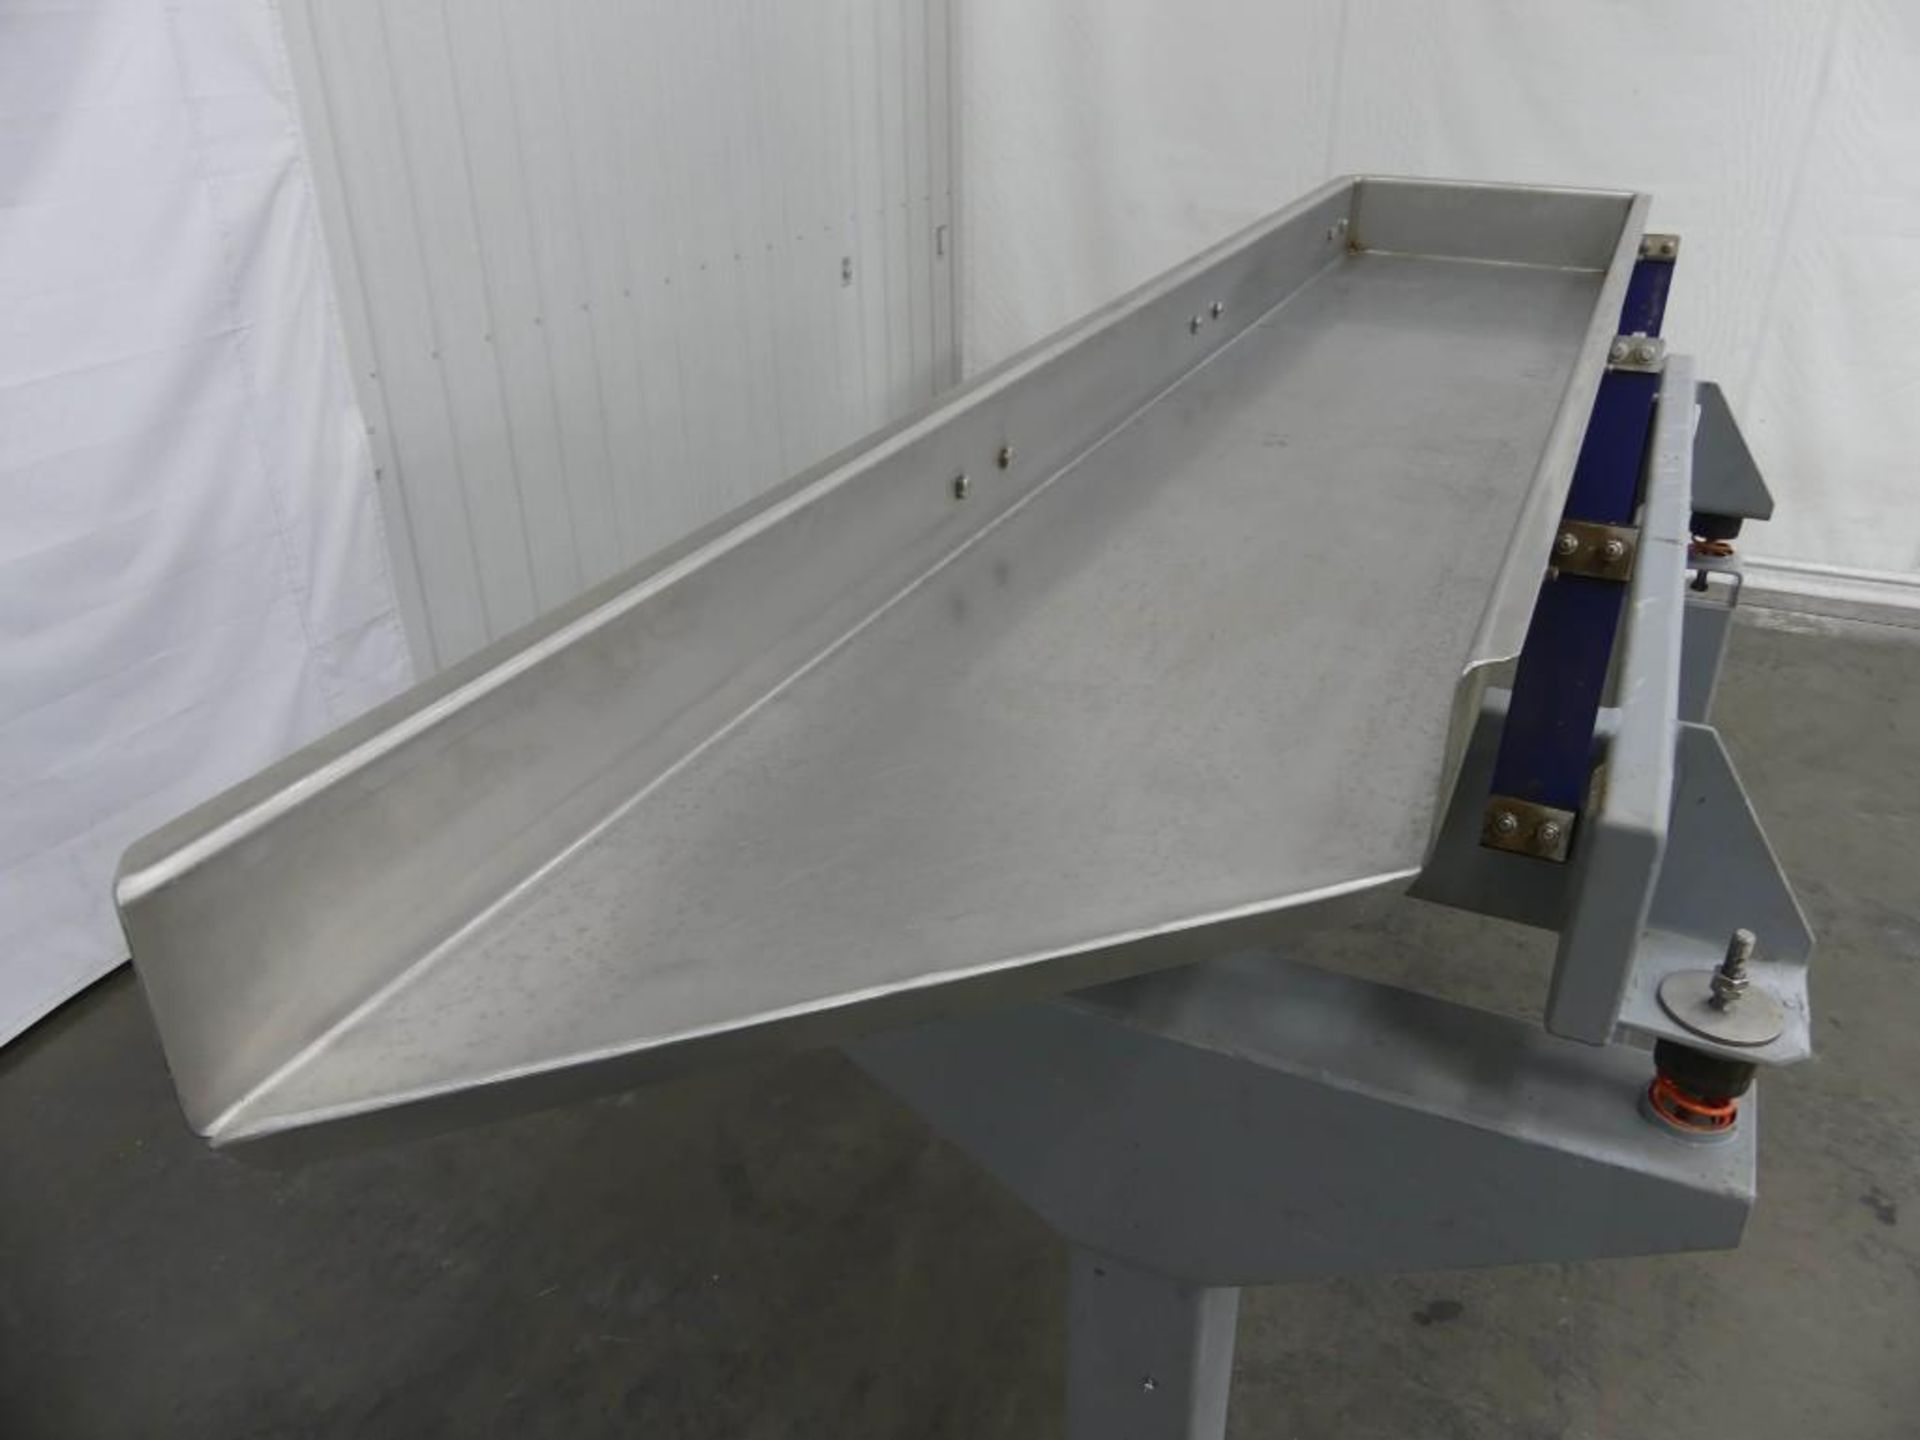 Key Iso-Flo Vibratory Conveyor 88" Long x 18" Wide - Image 4 of 11